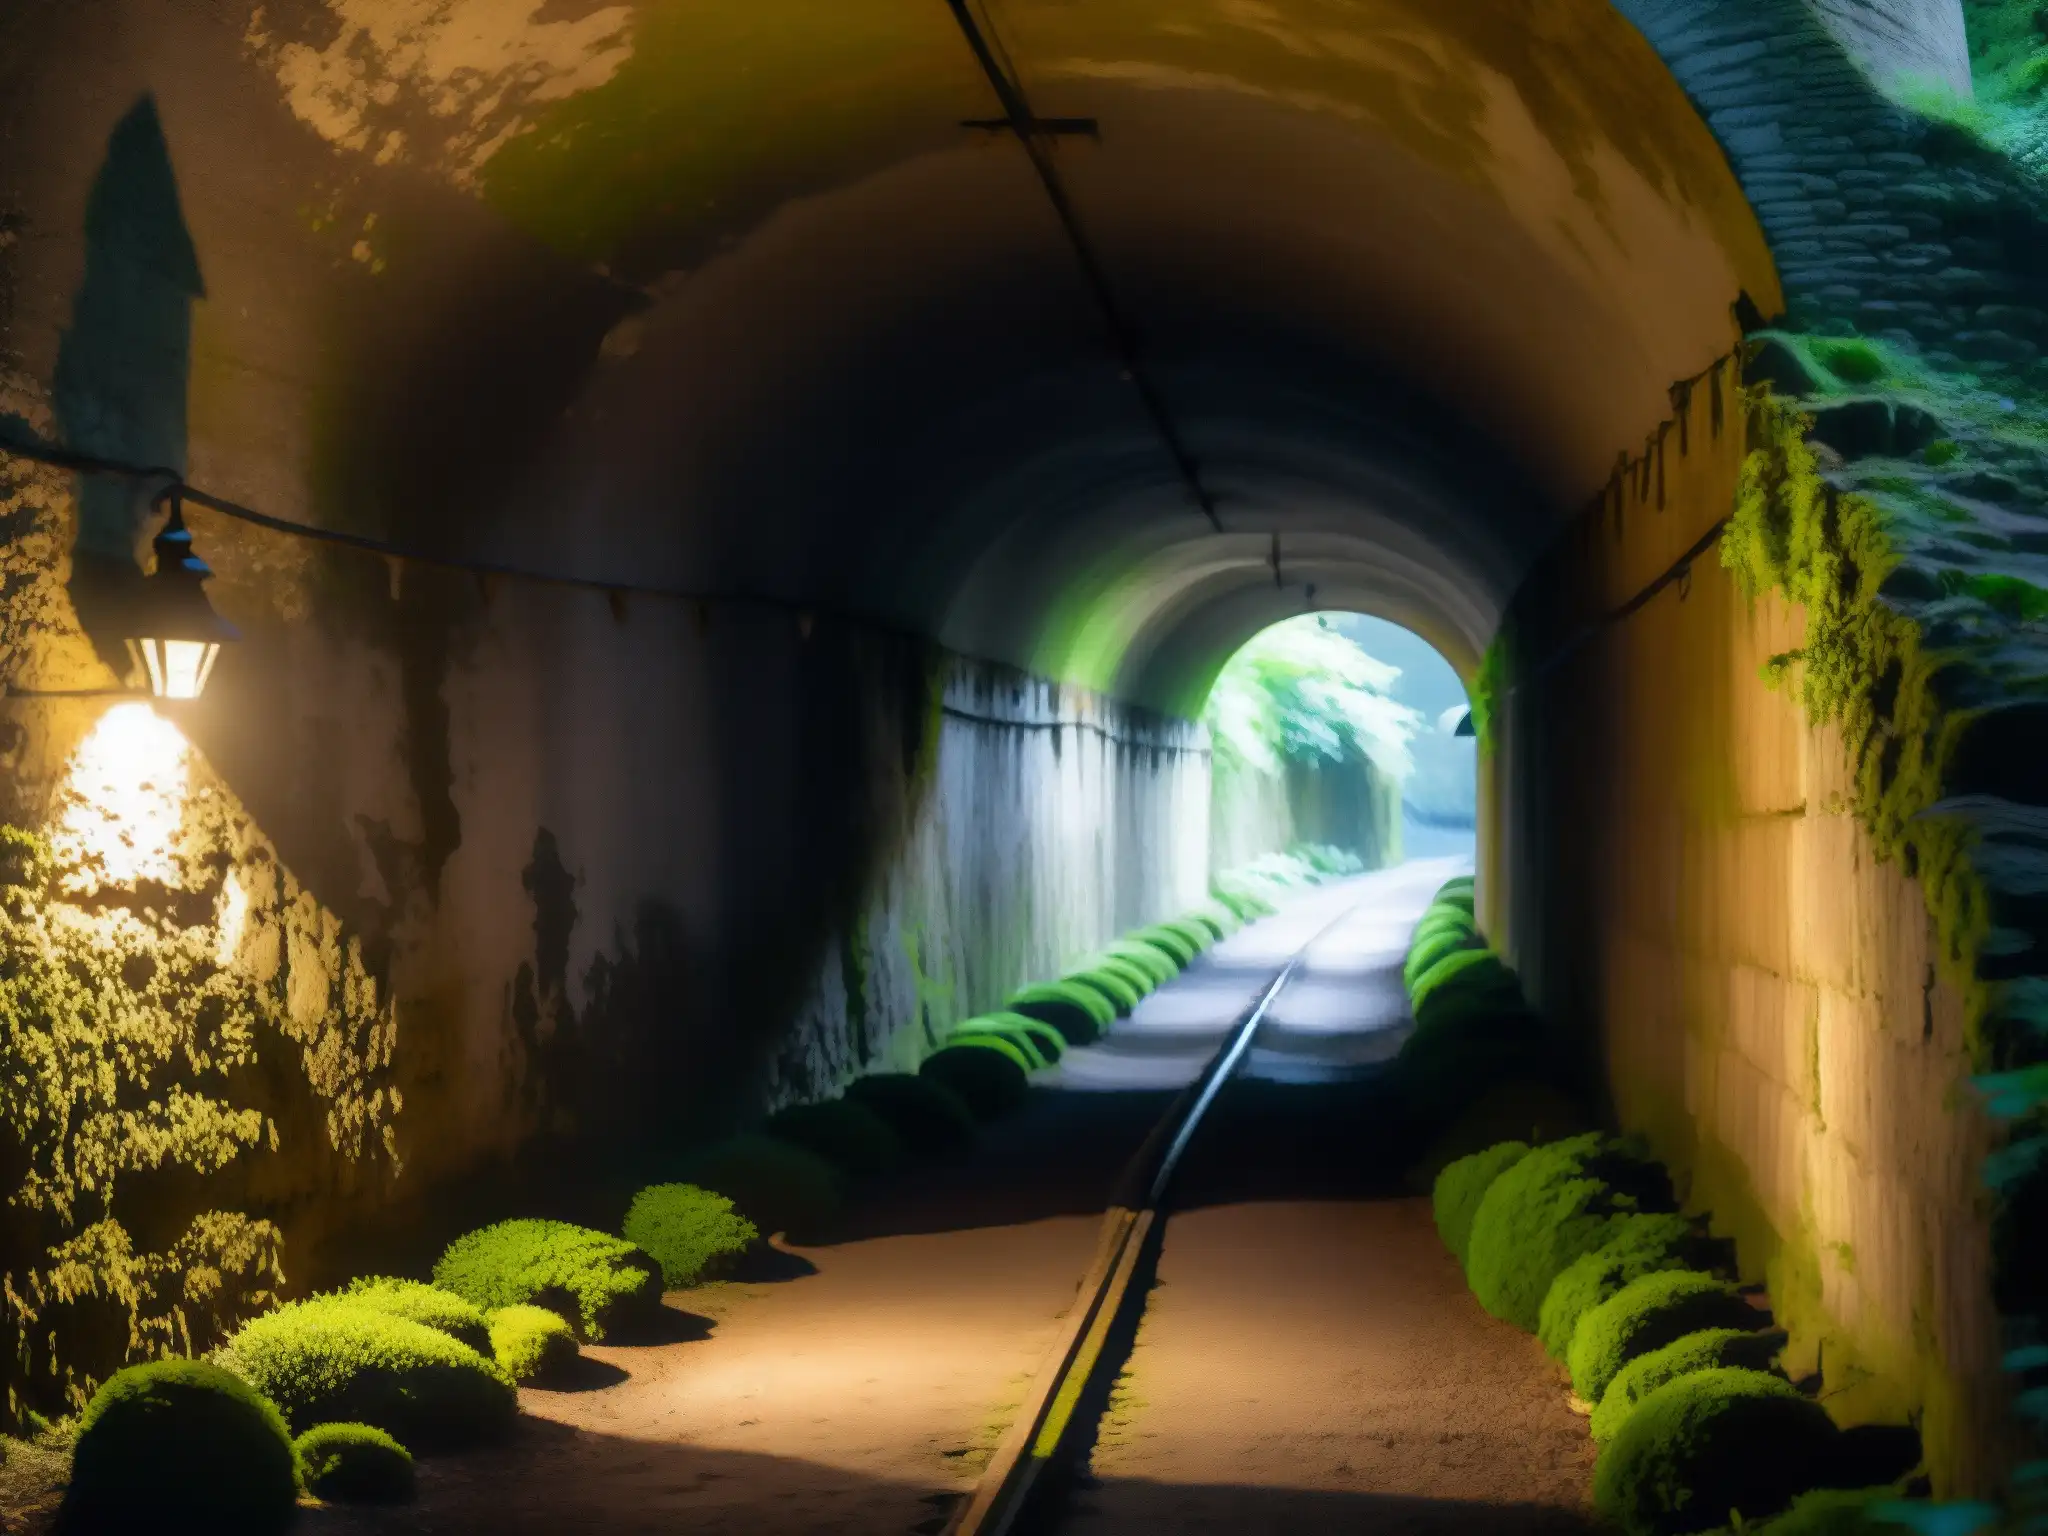 Un túnel Kiyotaki con apariciones en la penumbra, evocando destinos fatídicos y misteriosos